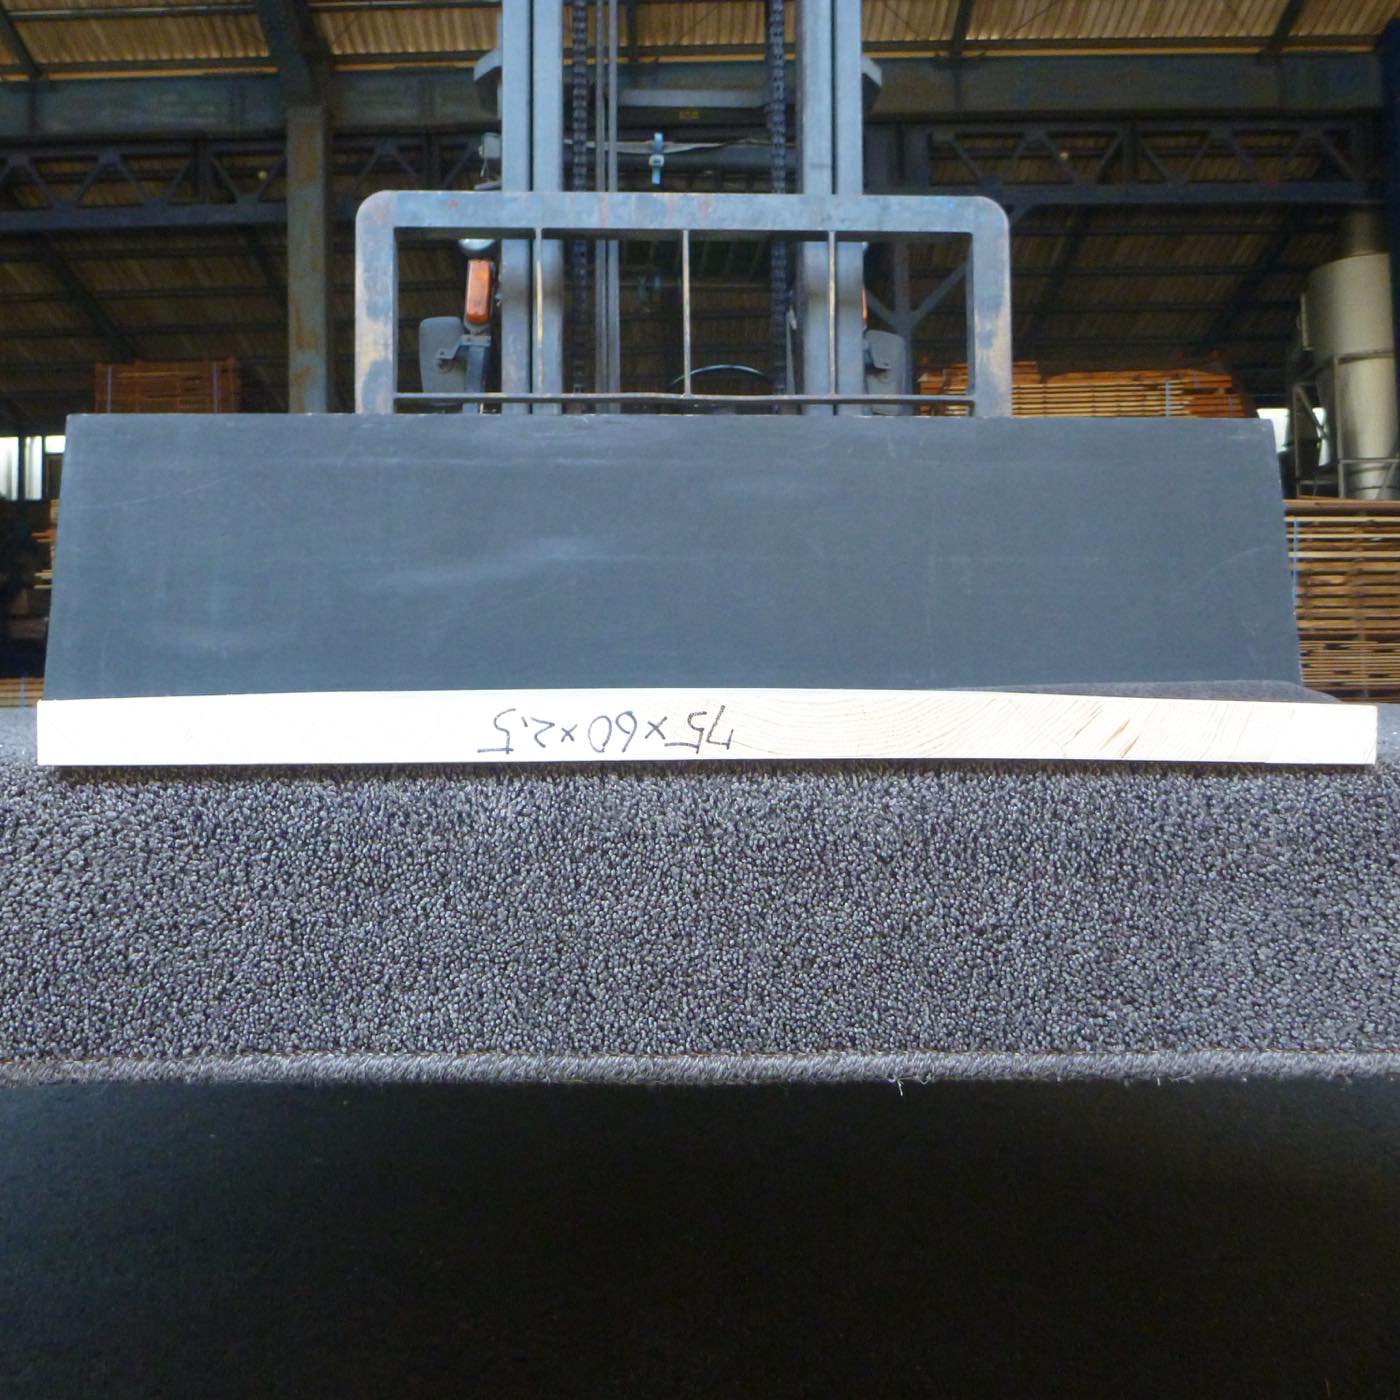 彫刻材 天然木曽檜 板目板 L650×T25×W550mm 65025550